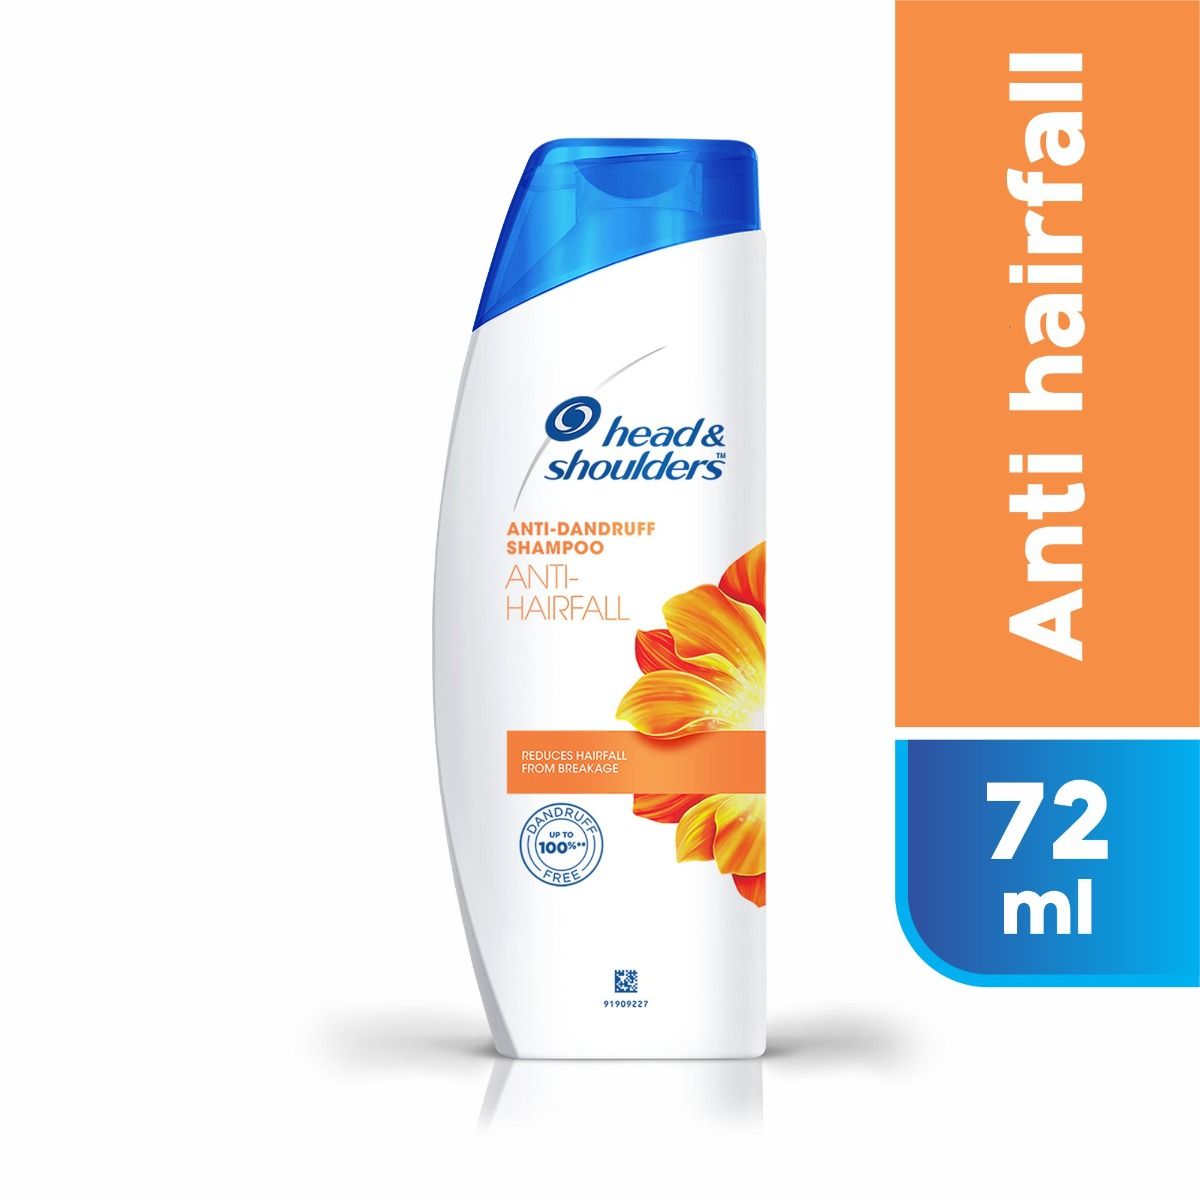 Head & Shoulders Anti-Dandruff Anti Hairfall Shampoo, 144 ml (2x72 ml), Pack of 2 S